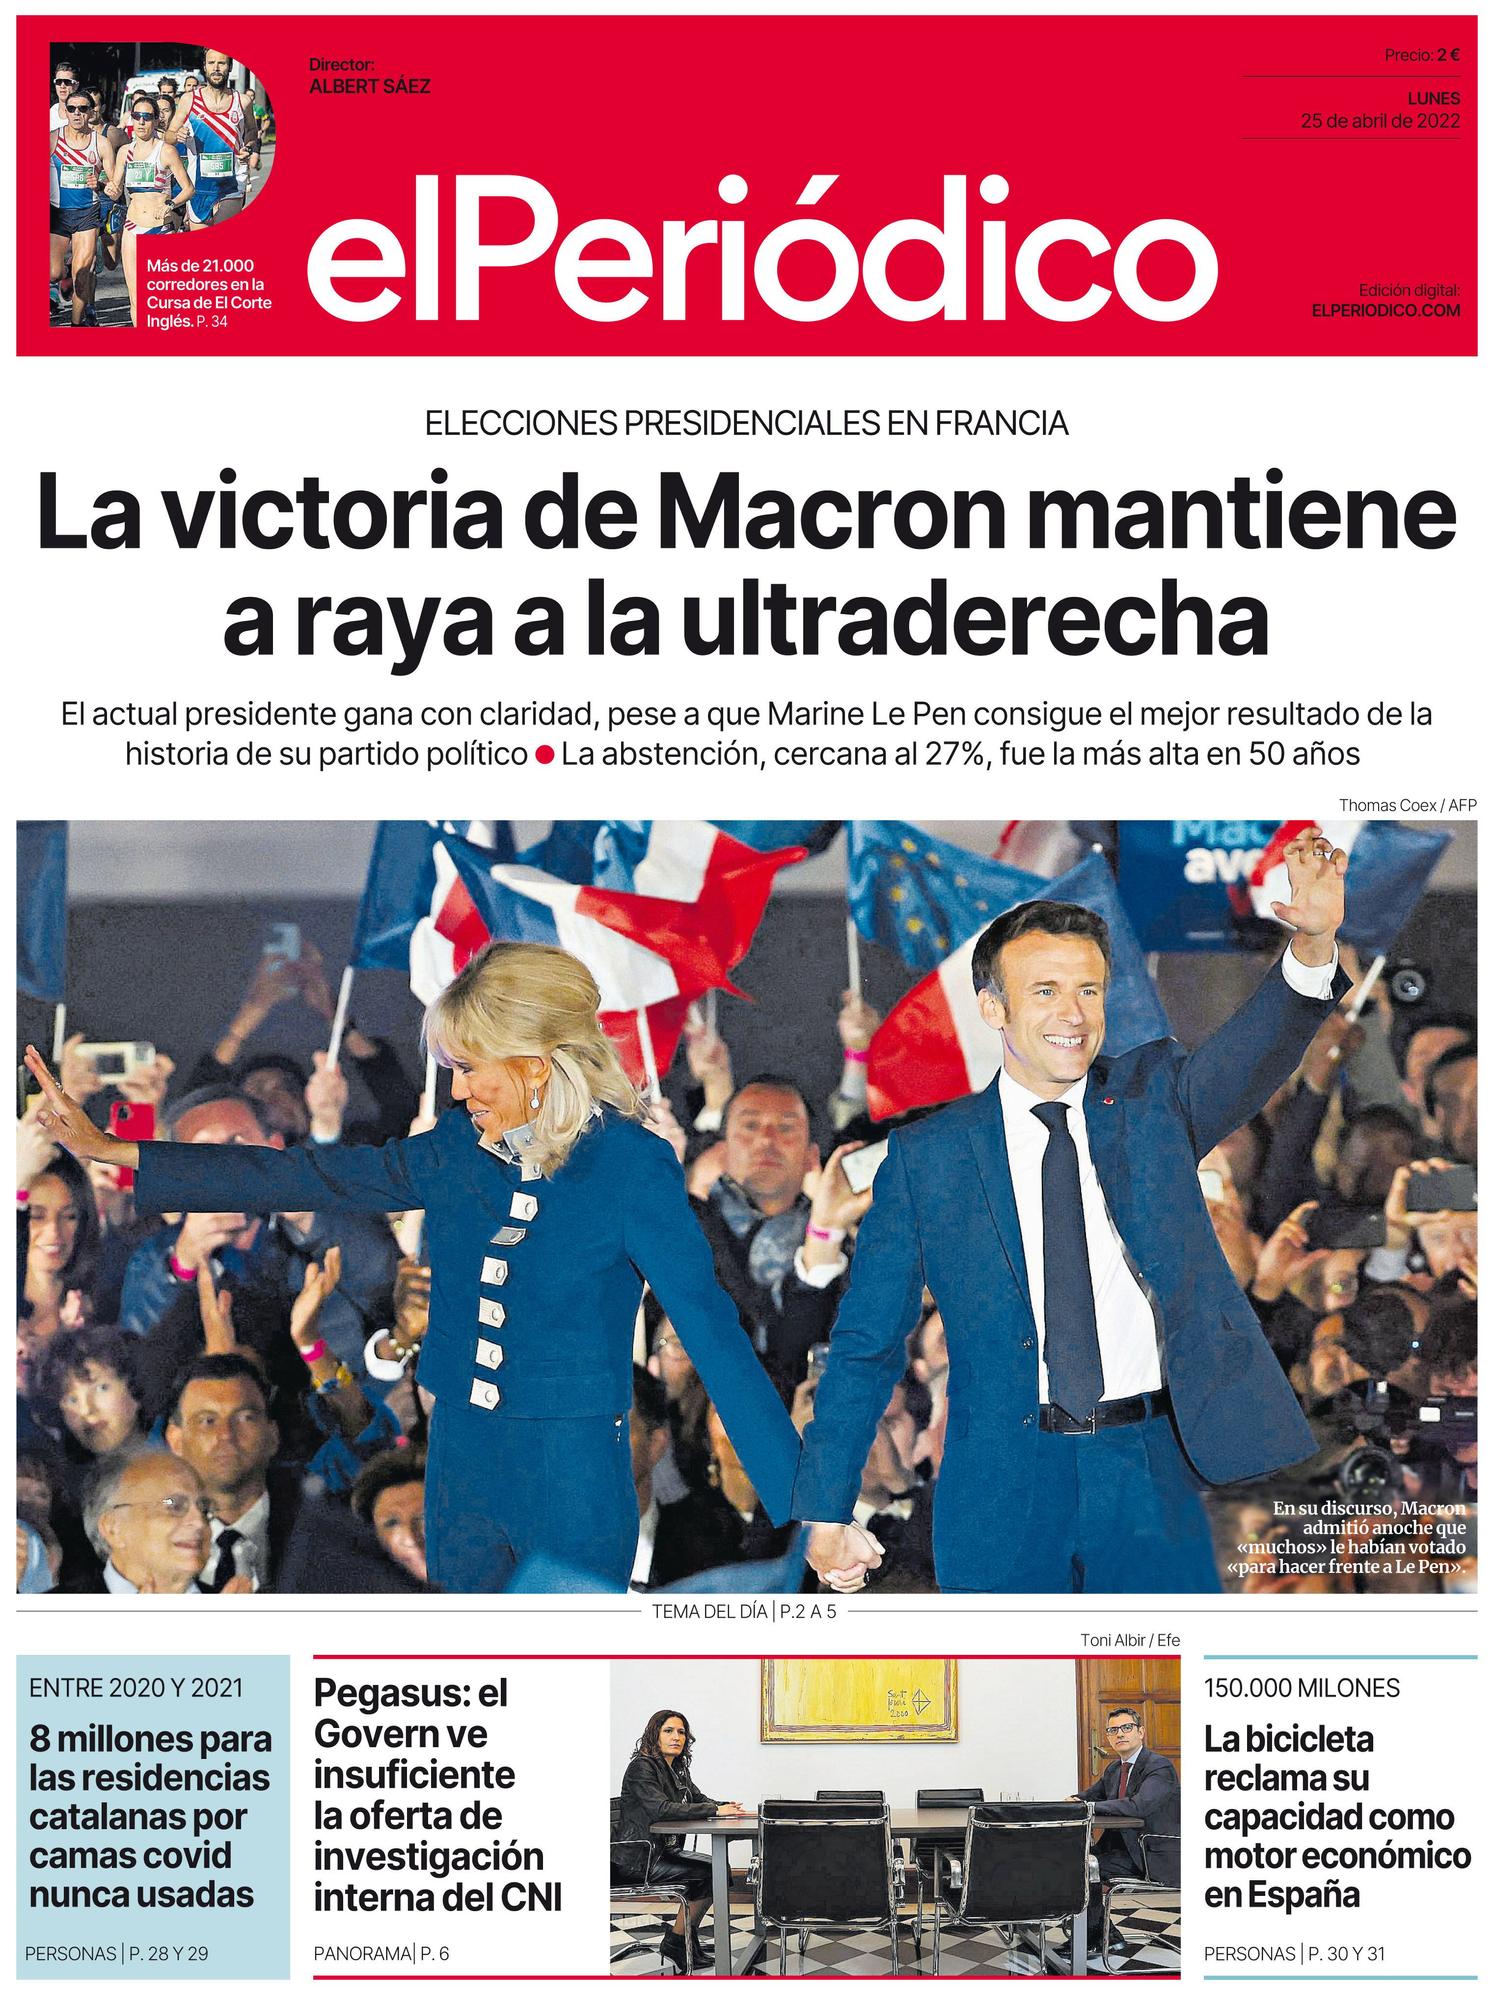 La portada de EL PERIÓDICO del 25 de abril de 2022